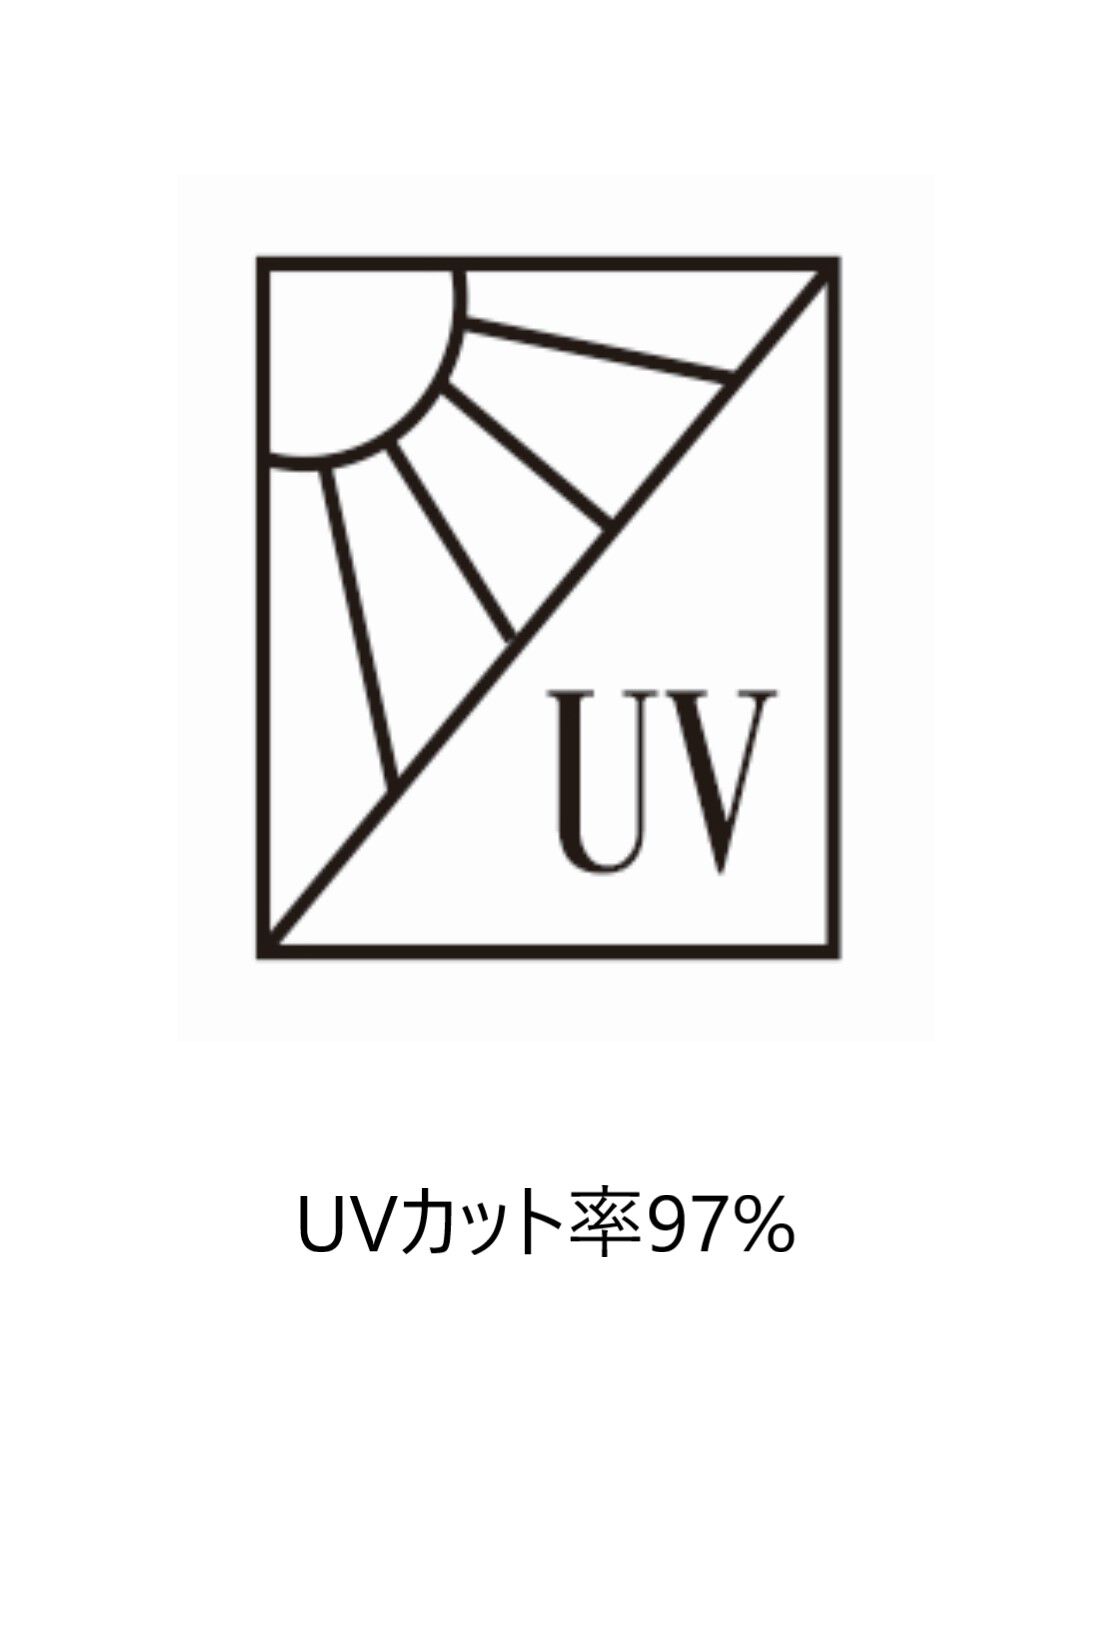 Real Stock|OSYAIRO　UVカットのキレイカラーマスク〈オレンジ〉|UVカット率97%